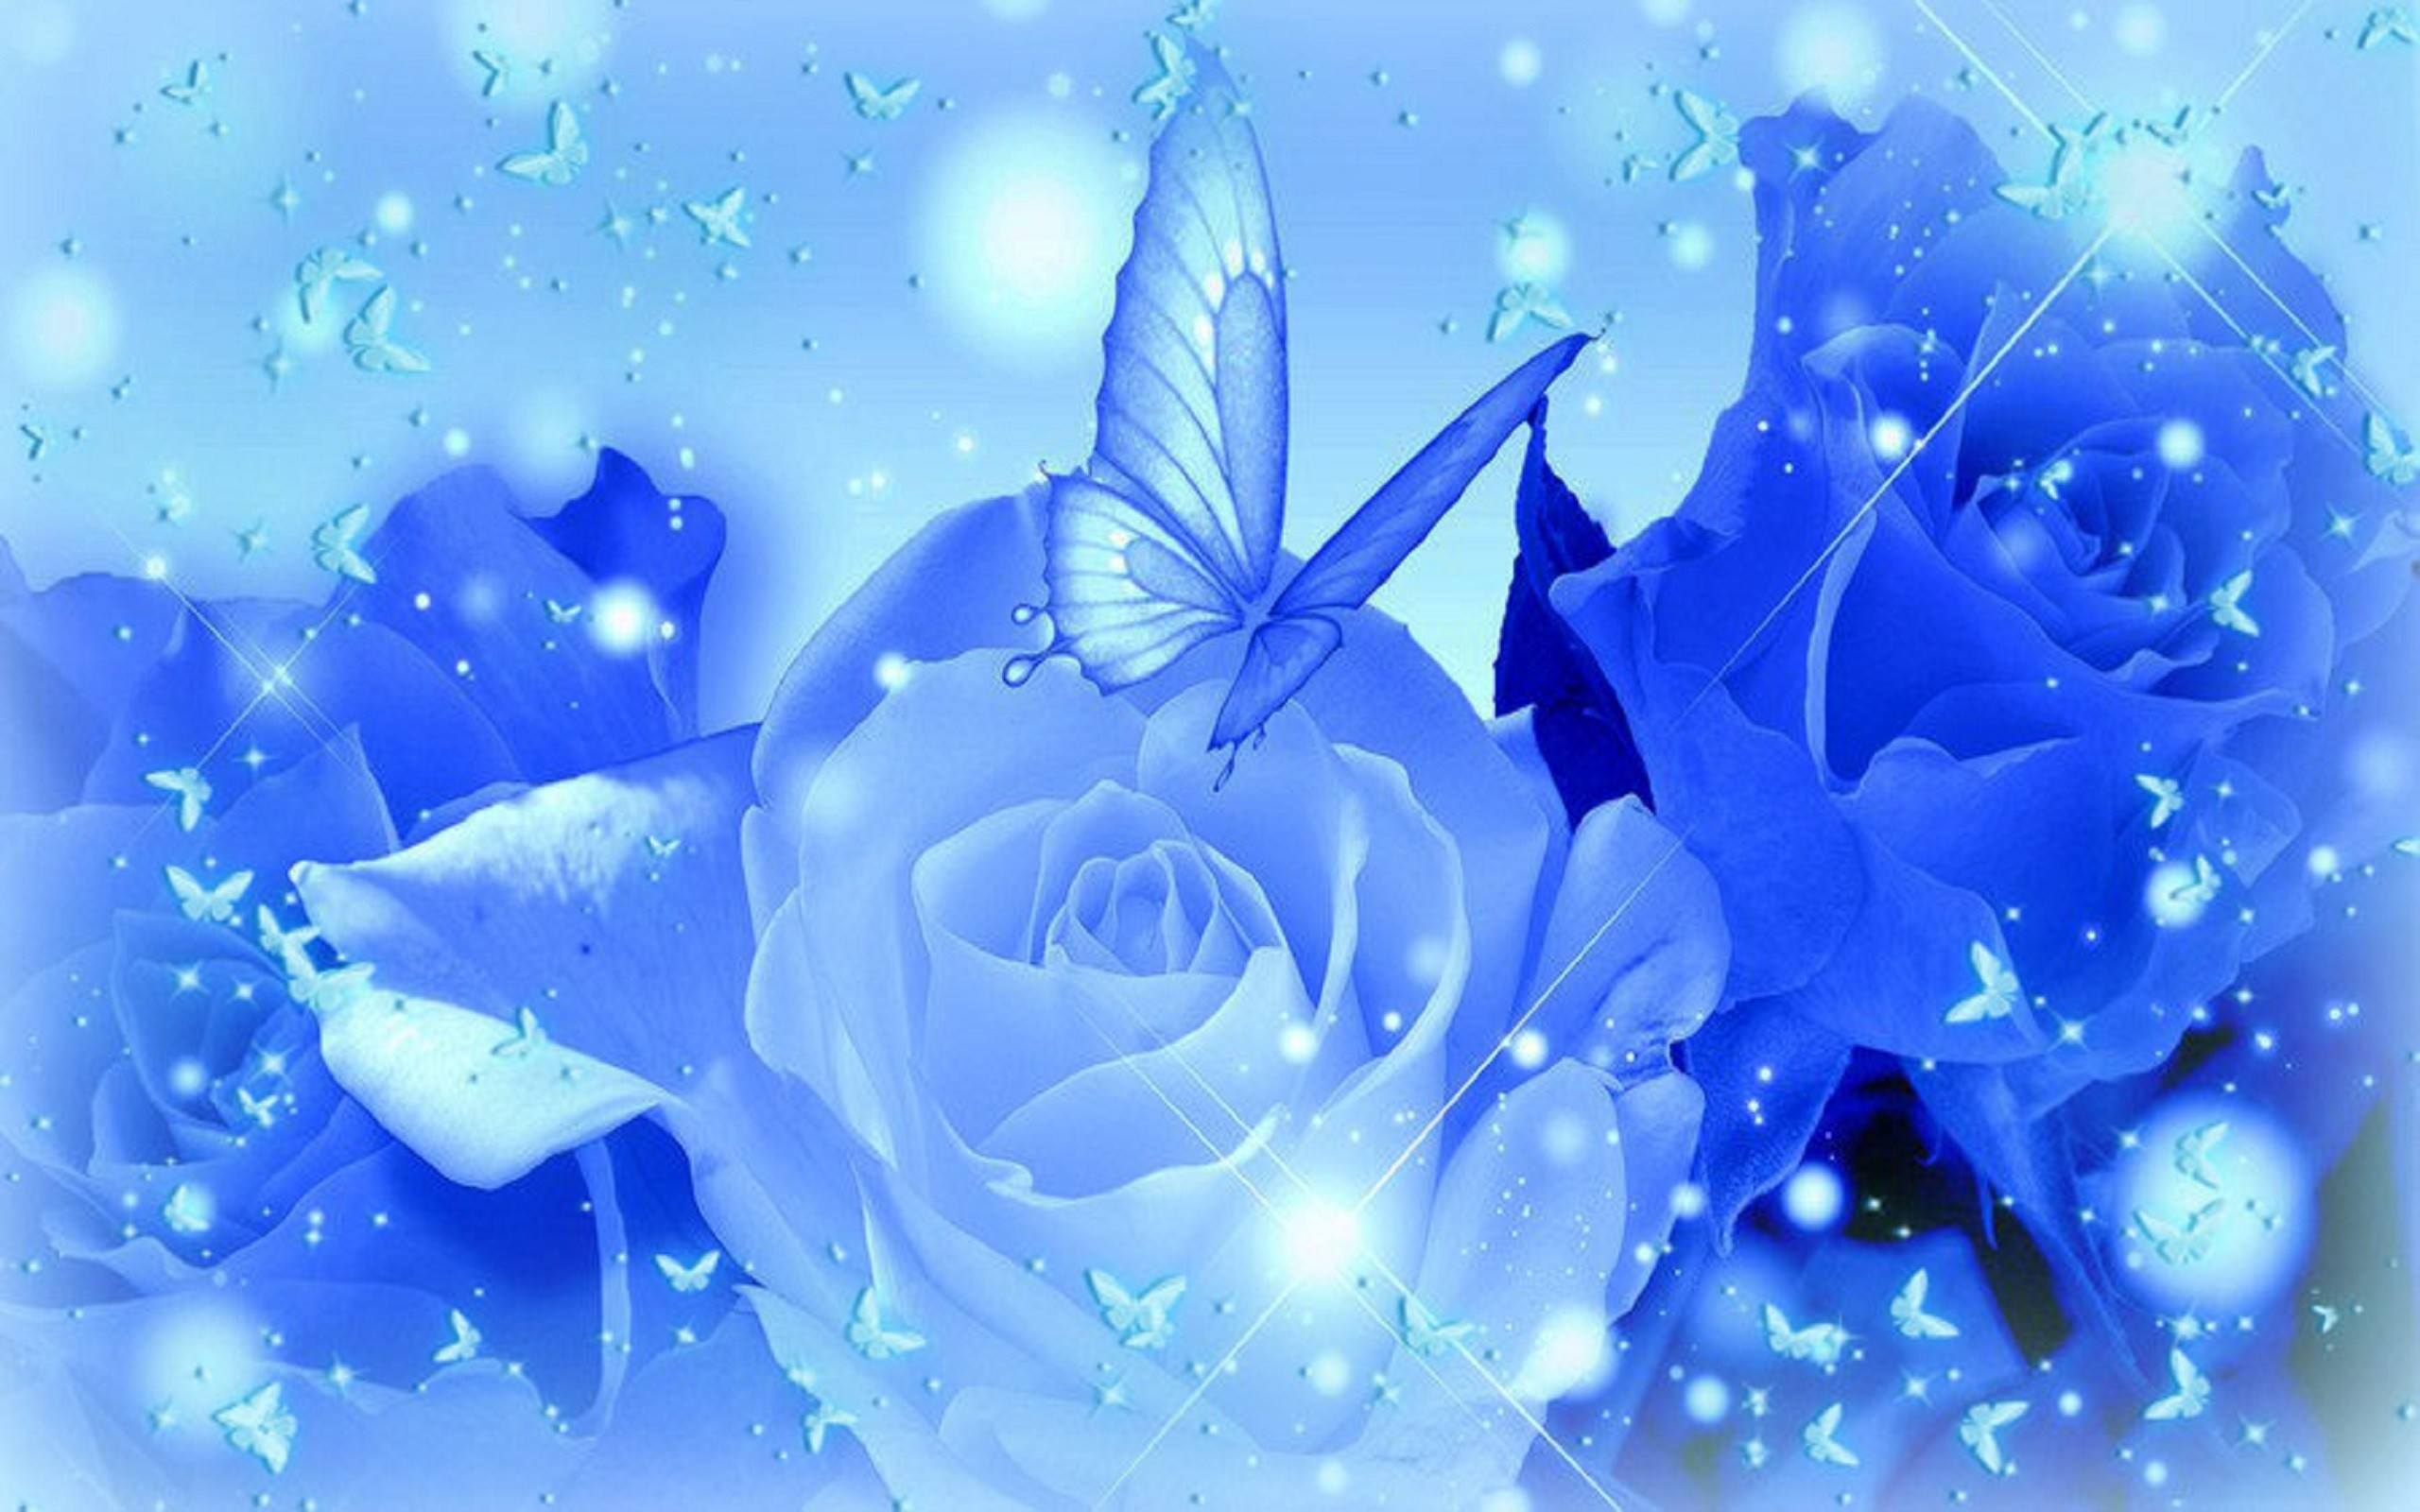 Light blue roses wallpaper Widescreen Wallpaper